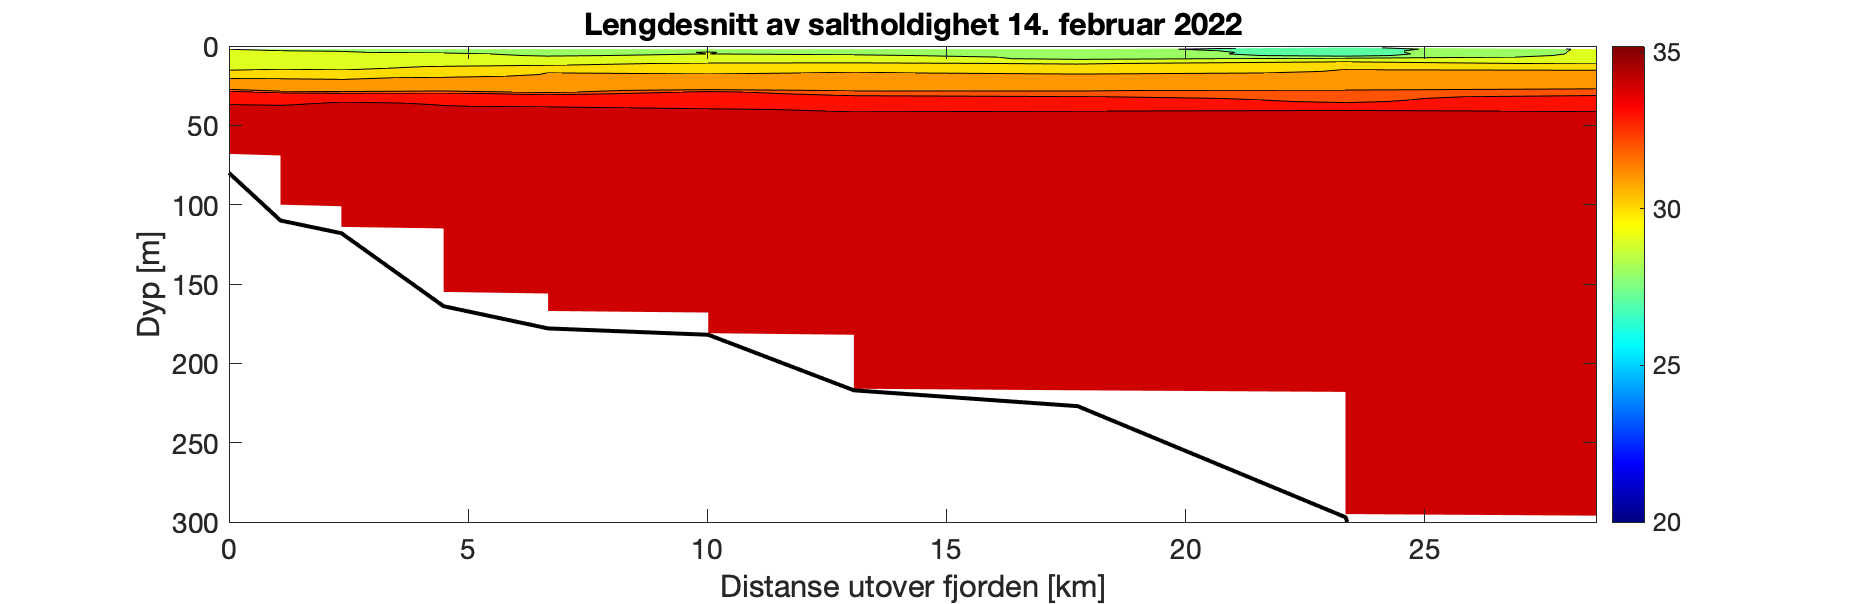 Figuren viser et histogram som illustrer variasjonen i saltholdighet (‰) i vannsøylen (0-300 meter) utover i Fjærlandsfjorden (0-30 km ut fjorden). Fargeskalaen representerer salinitet fra 35 ‰ (rødt) til 20 ‰ (fiolett). Det er relativt jevn dybdefordeling i salinitet langs hele fjorden, med laveste verdier i de øvre 25 m. Gjennom vannsøylen dypere enn 25 m er det > 33 ‰.